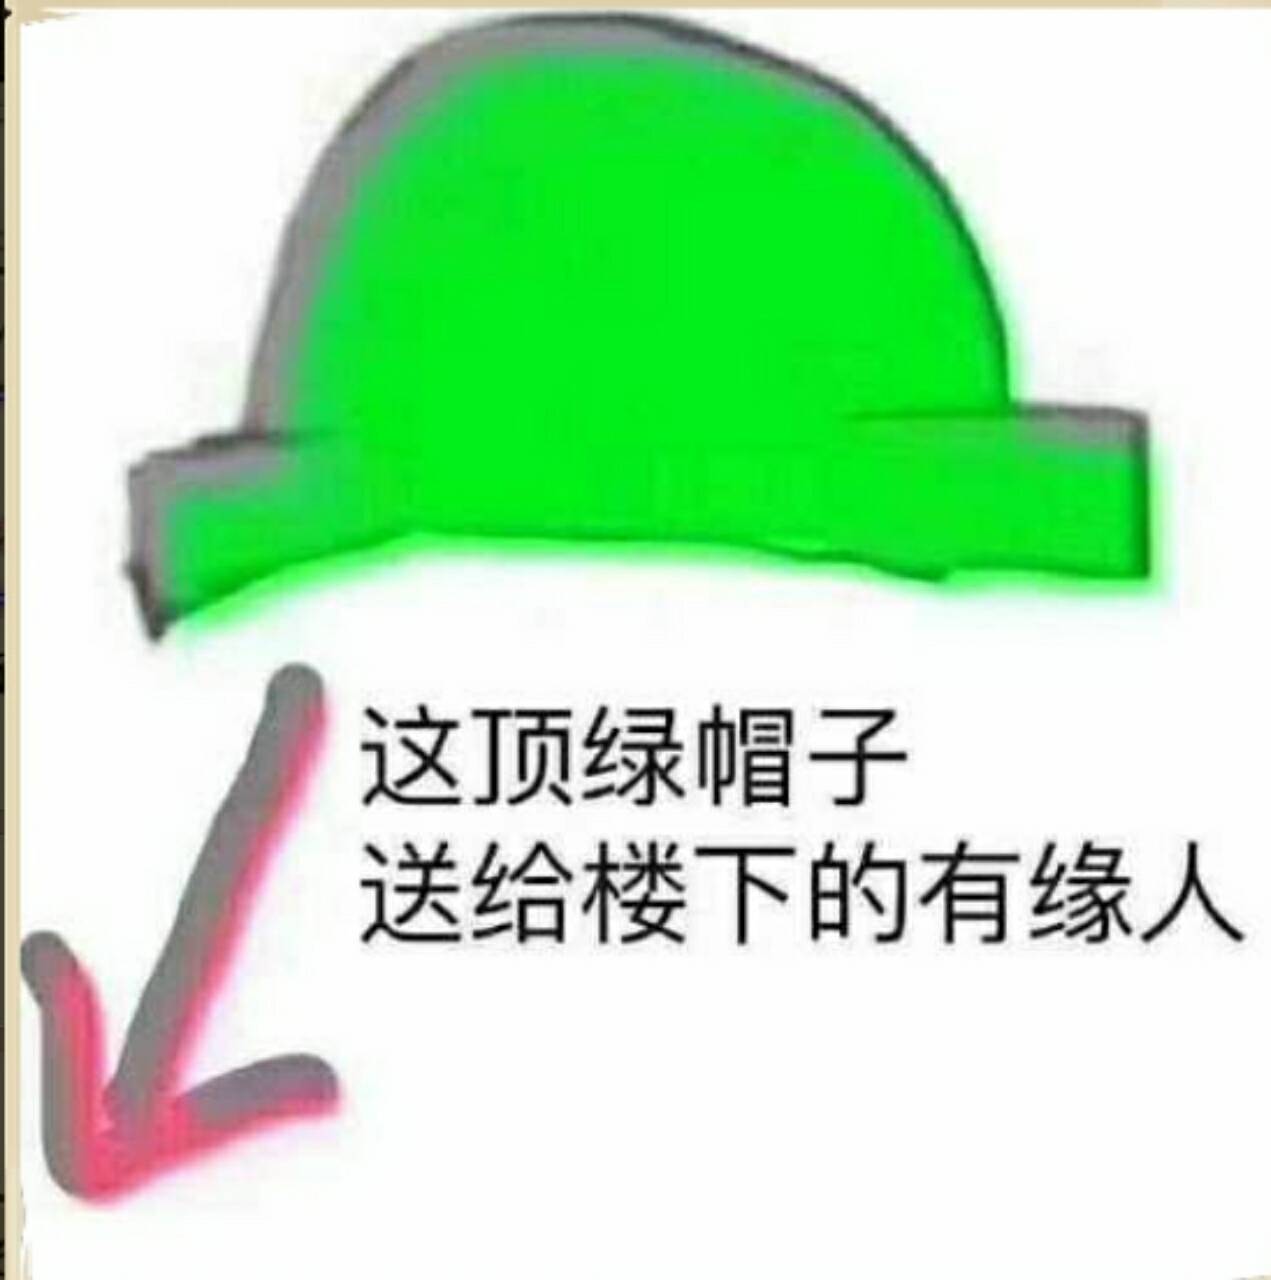 这顶绿帽子送给楼下的有缘人